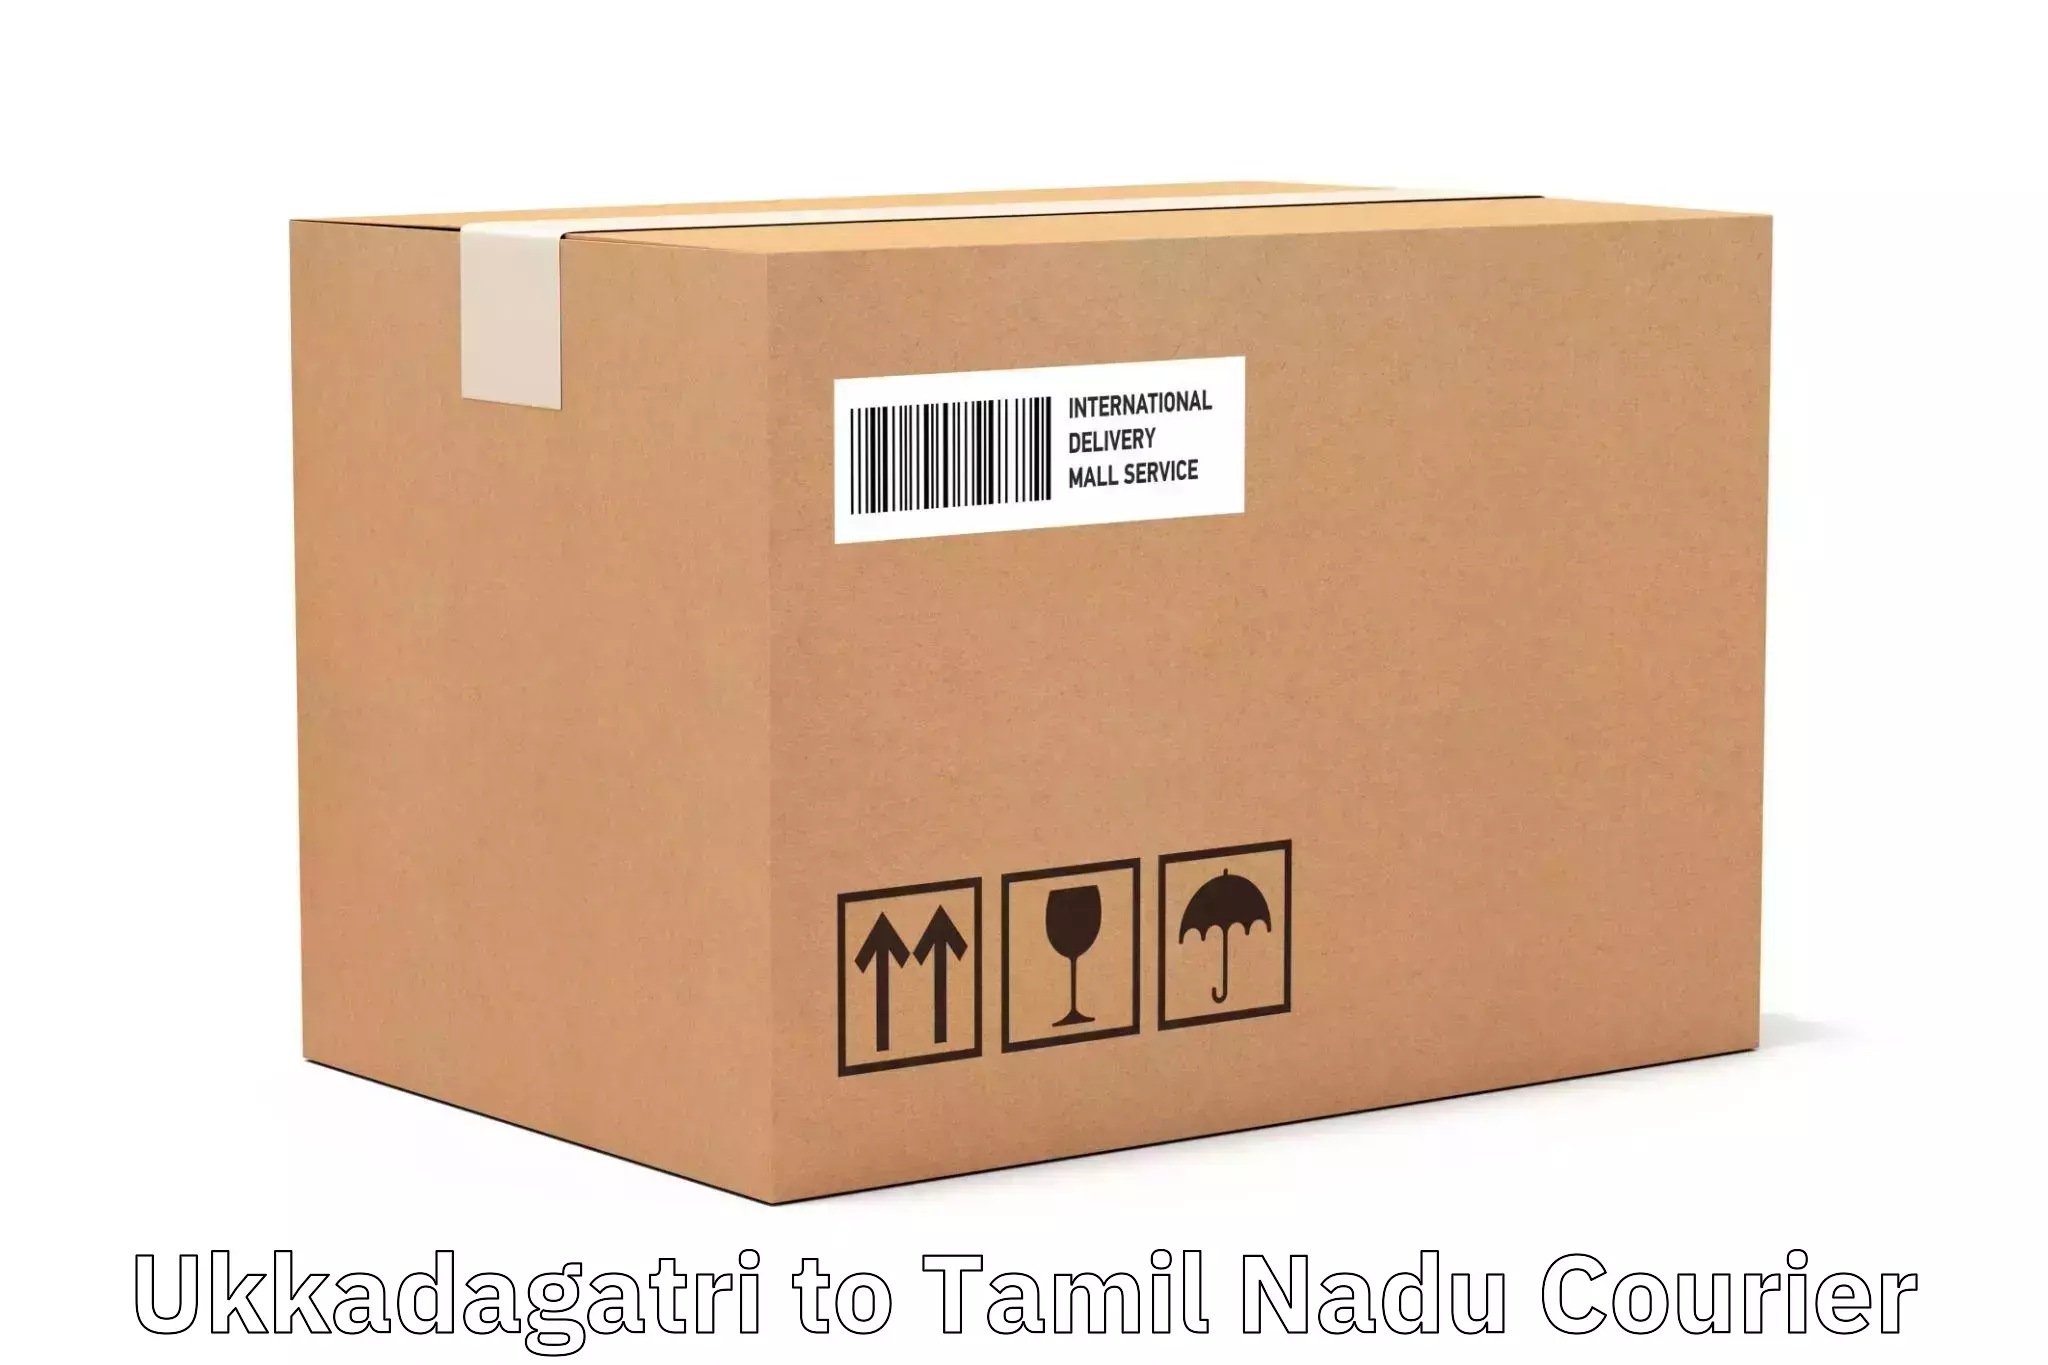 Courier service partnerships Ukkadagatri to Madurai Kamraj University